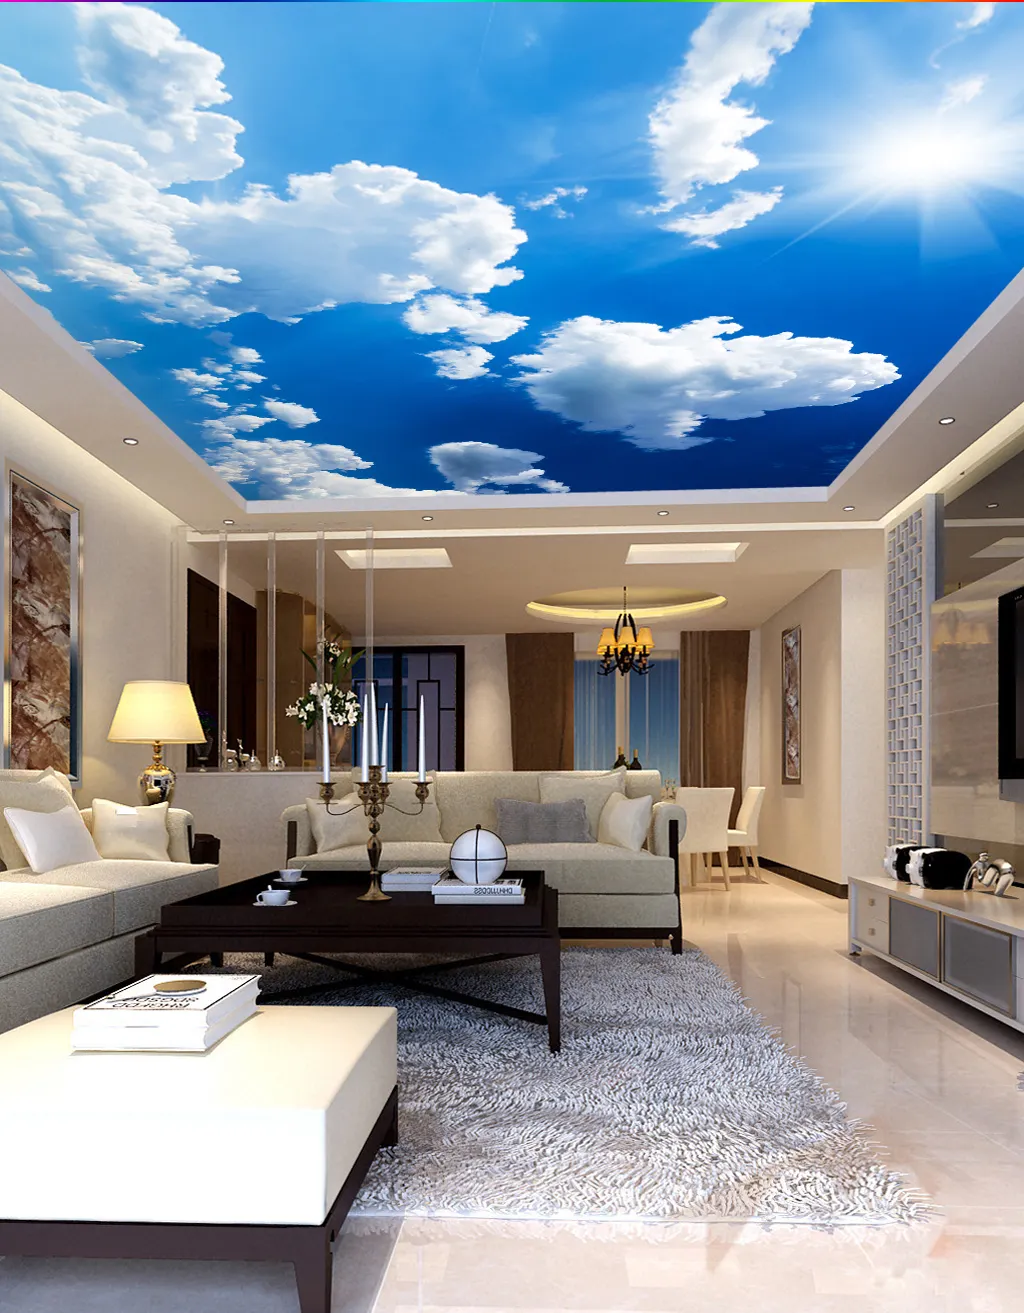 ZHIHAI Sunny Day ฝ้าเพดาน Pvc 3d,มีสารหน่วงไฟสำหรับตกแต่งภายในโรงแรมพิมพ์ลายท้องฟ้า UV น้ำหนักเบา